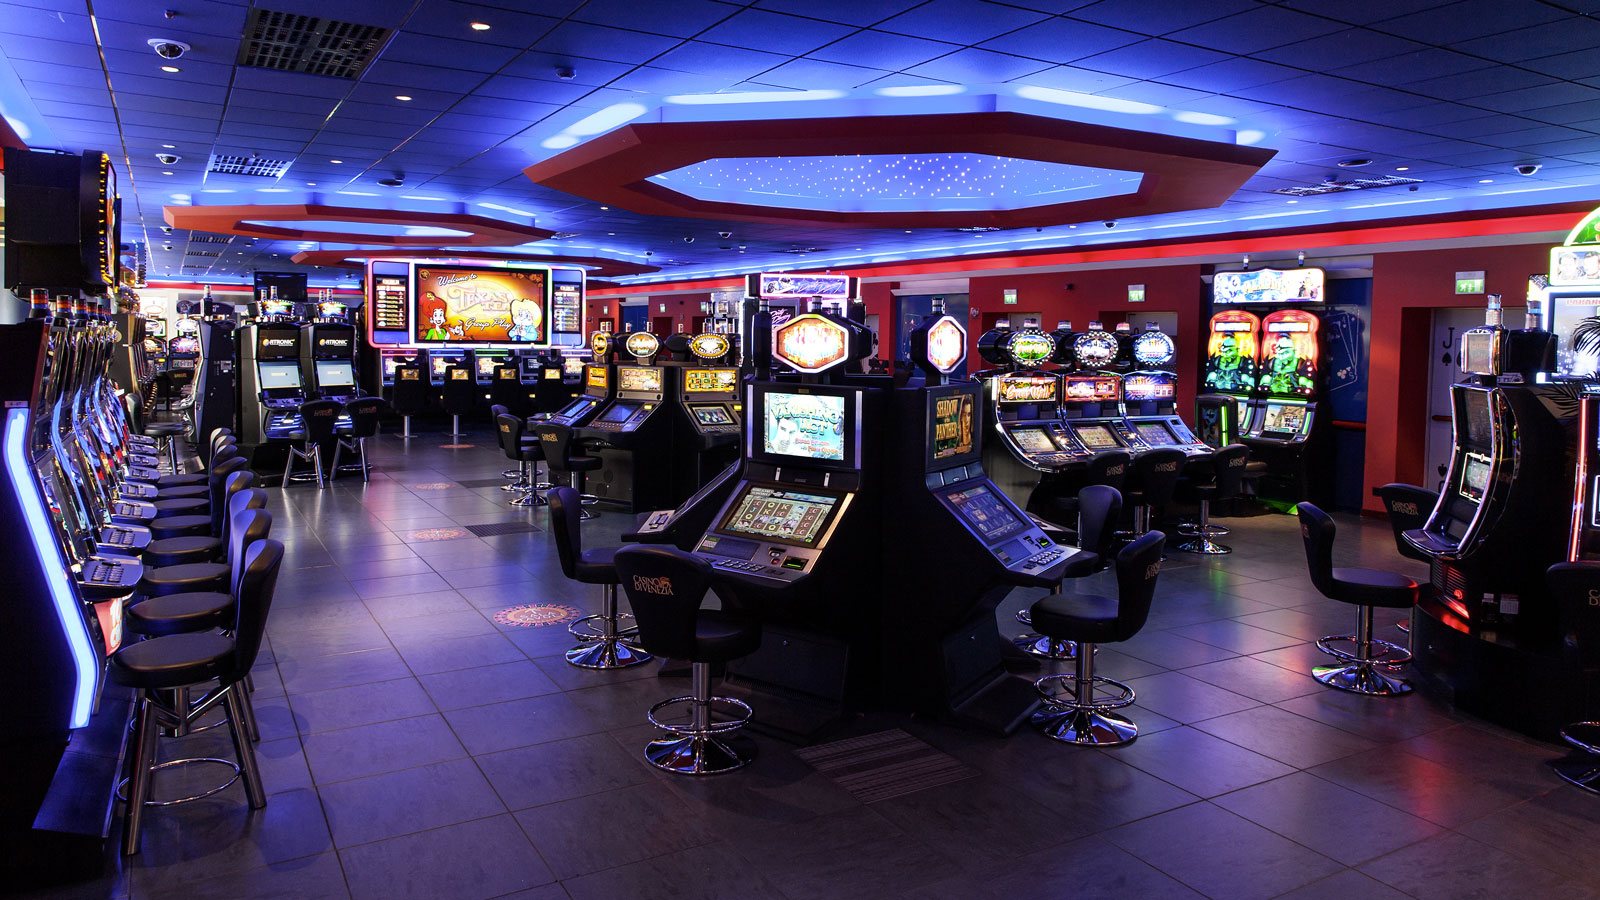 Игровой зал 777. Зал игровых автоматов Торнадо. Игровые залы казино. Игровой зал автоматы казино. Игровой зал с игровыми автоматами.